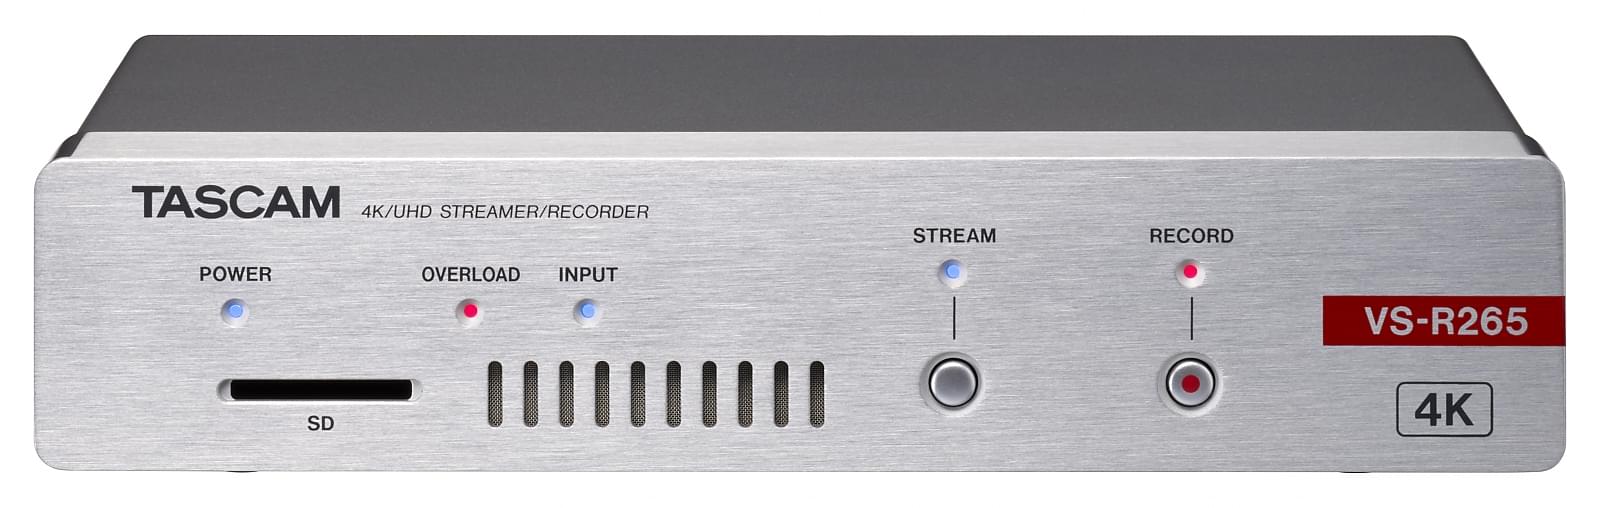 Encoder, Decoder, Streamer und -Recorder für Video in 4K/UHD | Tascam VS-R265